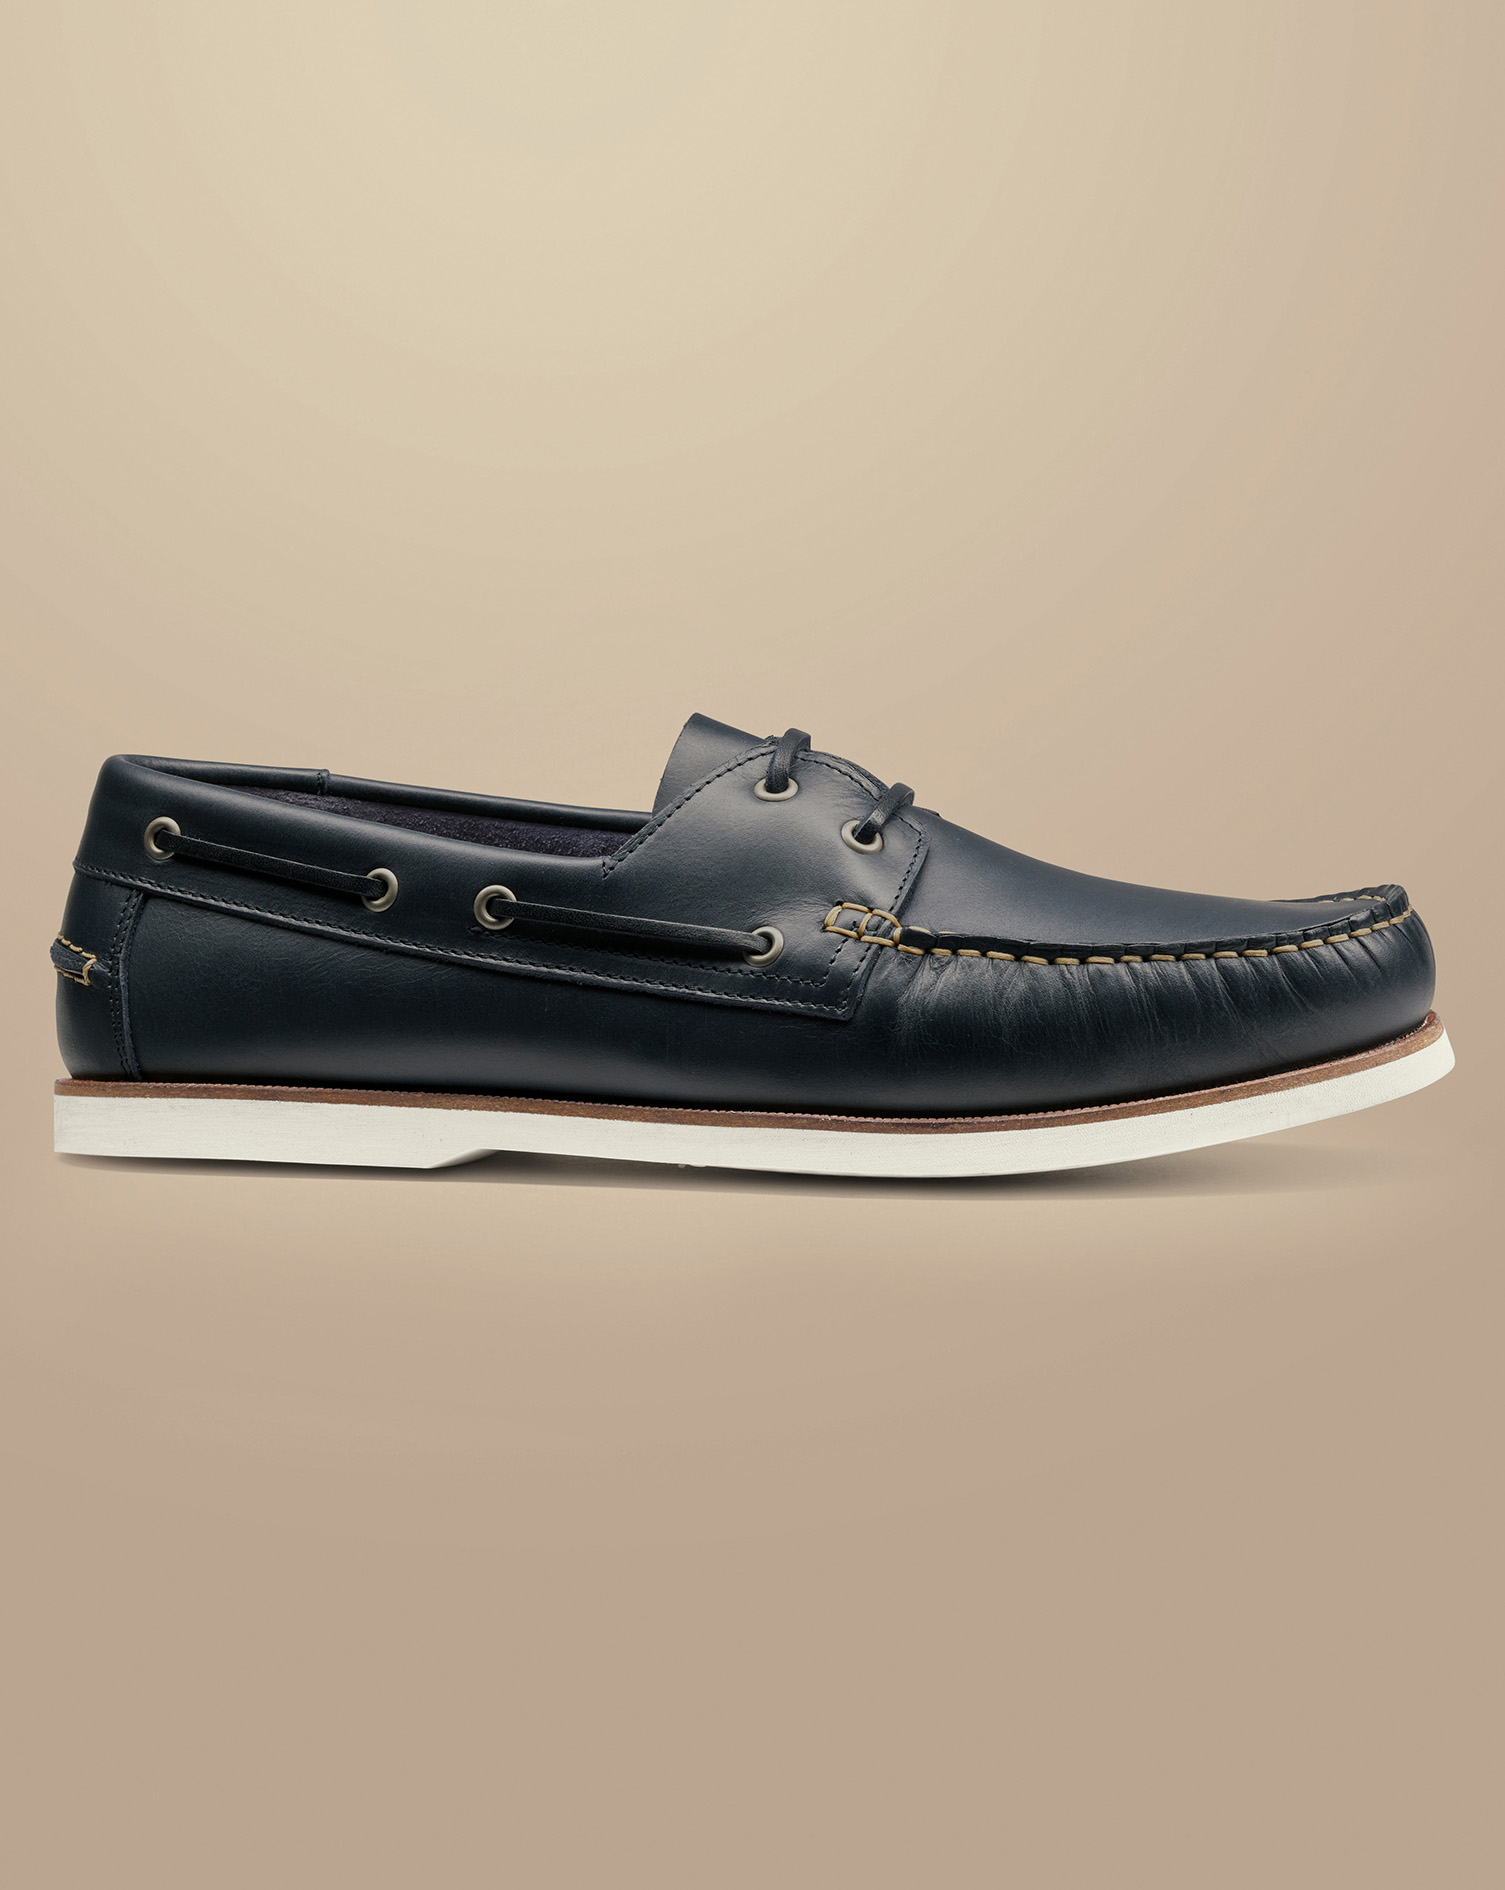 Men's Charles Tyrwhitt Leather Boat Shoe - Dark Navy Blue Size 13
